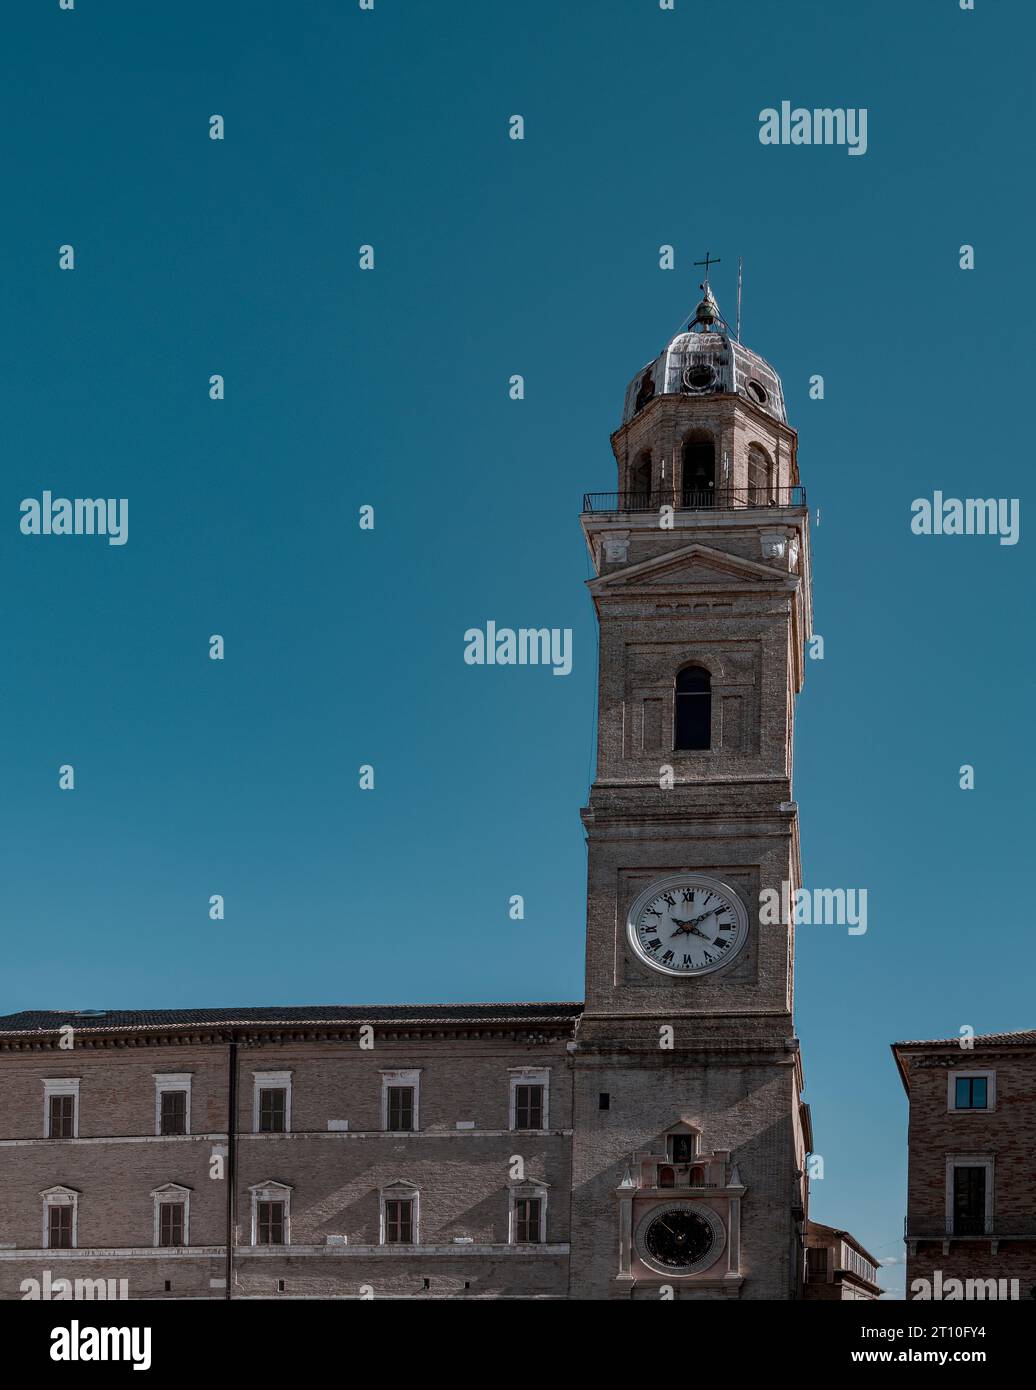 Vista del centro histórico de la ciudad de Macerata Foto de stock